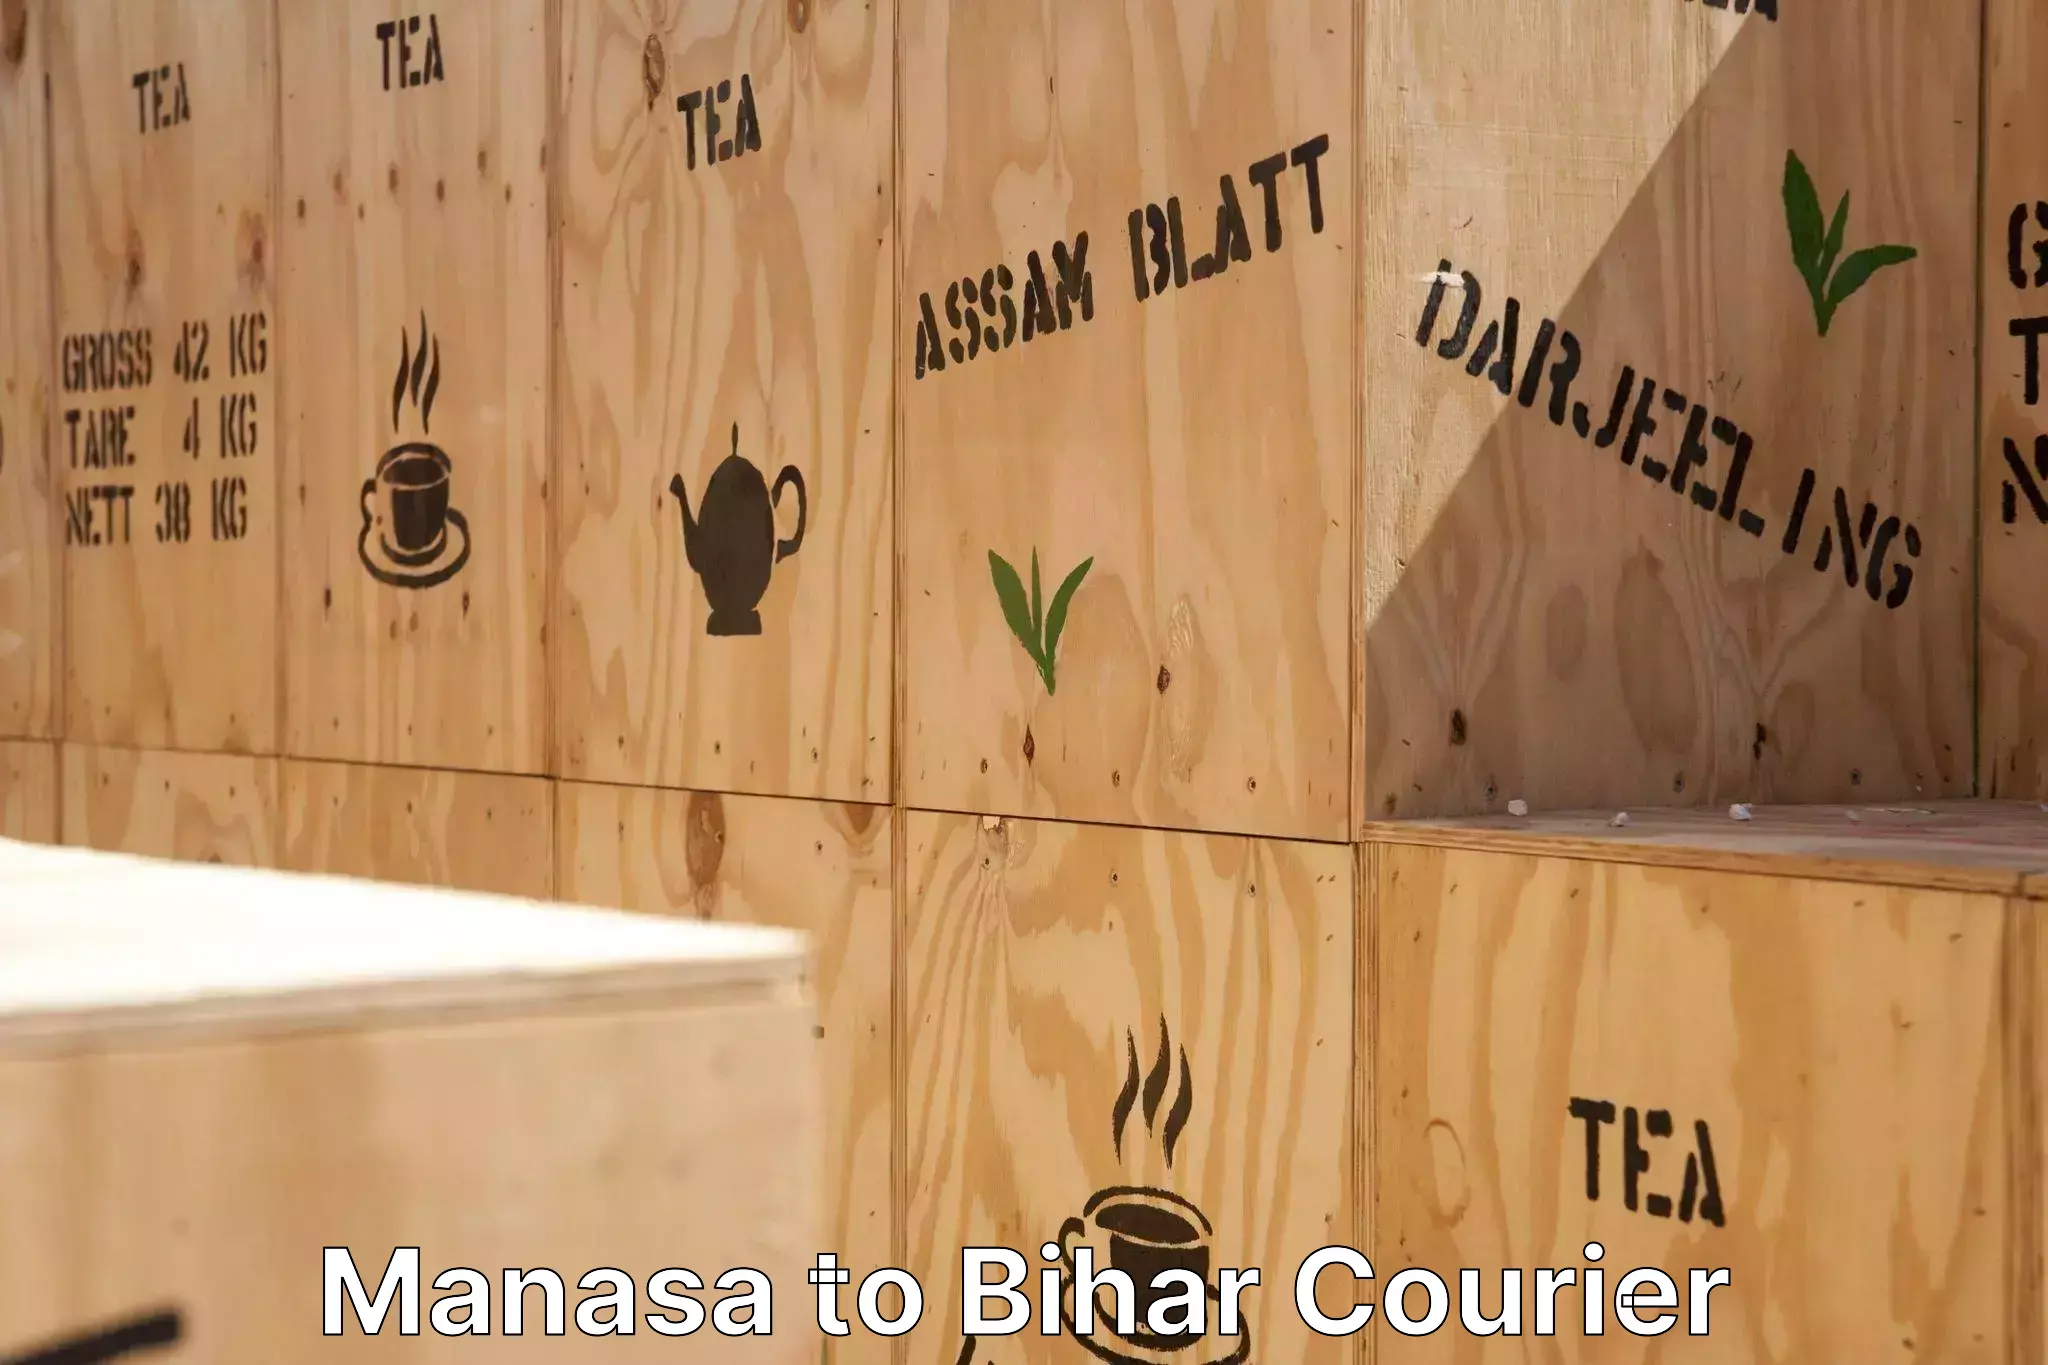 Furniture relocation experts in Manasa to Tekari